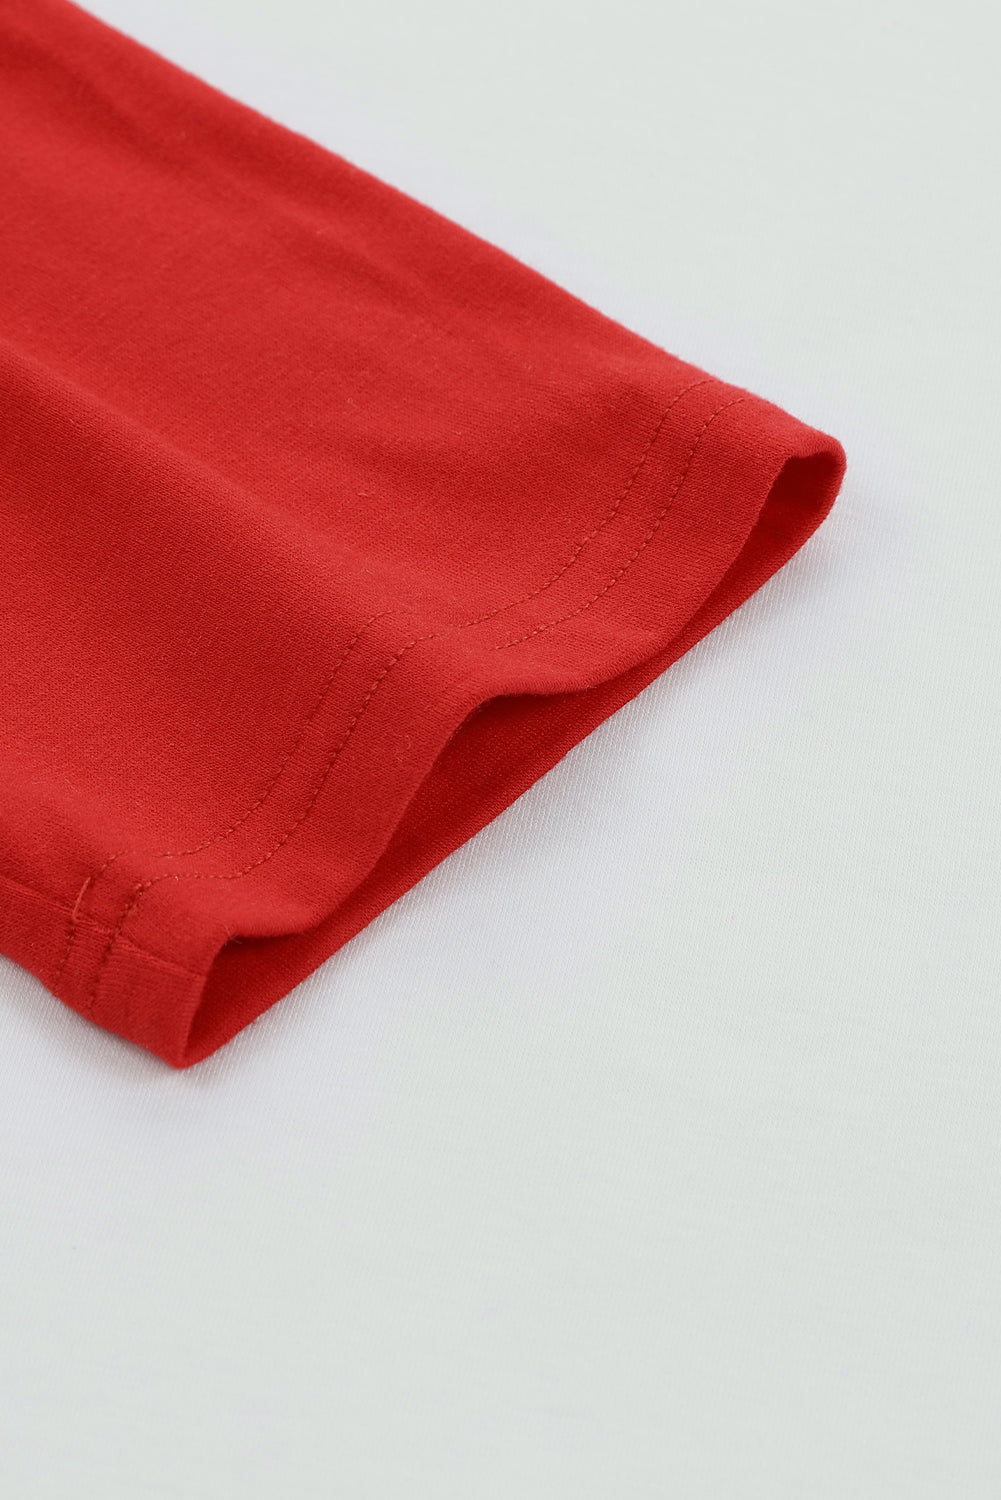 Gornji dio pulovera s raglan rukavima vatreno crvene boje